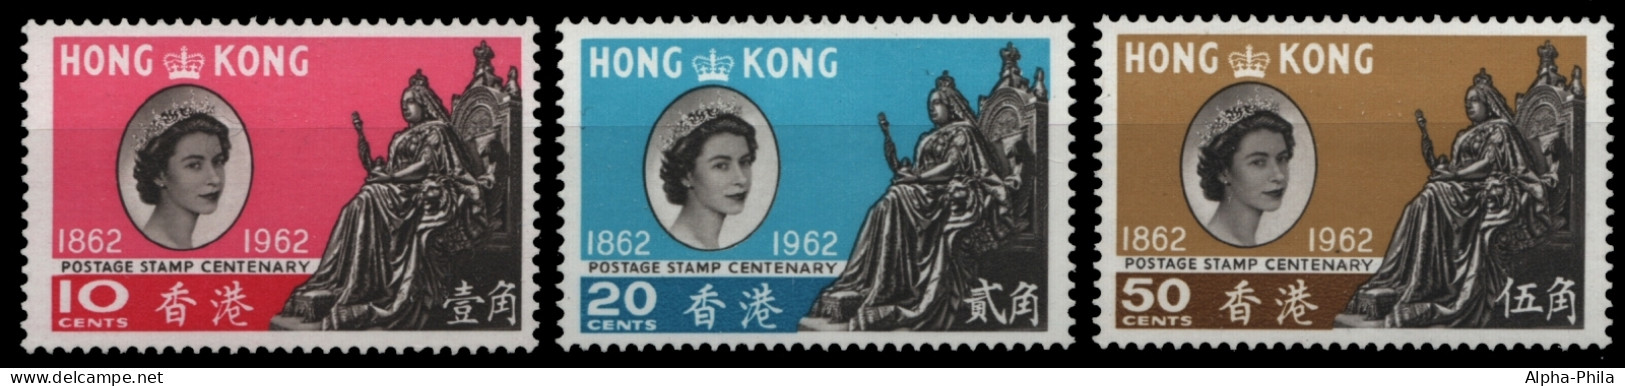 Hongkong 1962 - Mi-Nr. 193-195 ** - MNH - 100 Jahre Hongkong-Briefmarken - Neufs